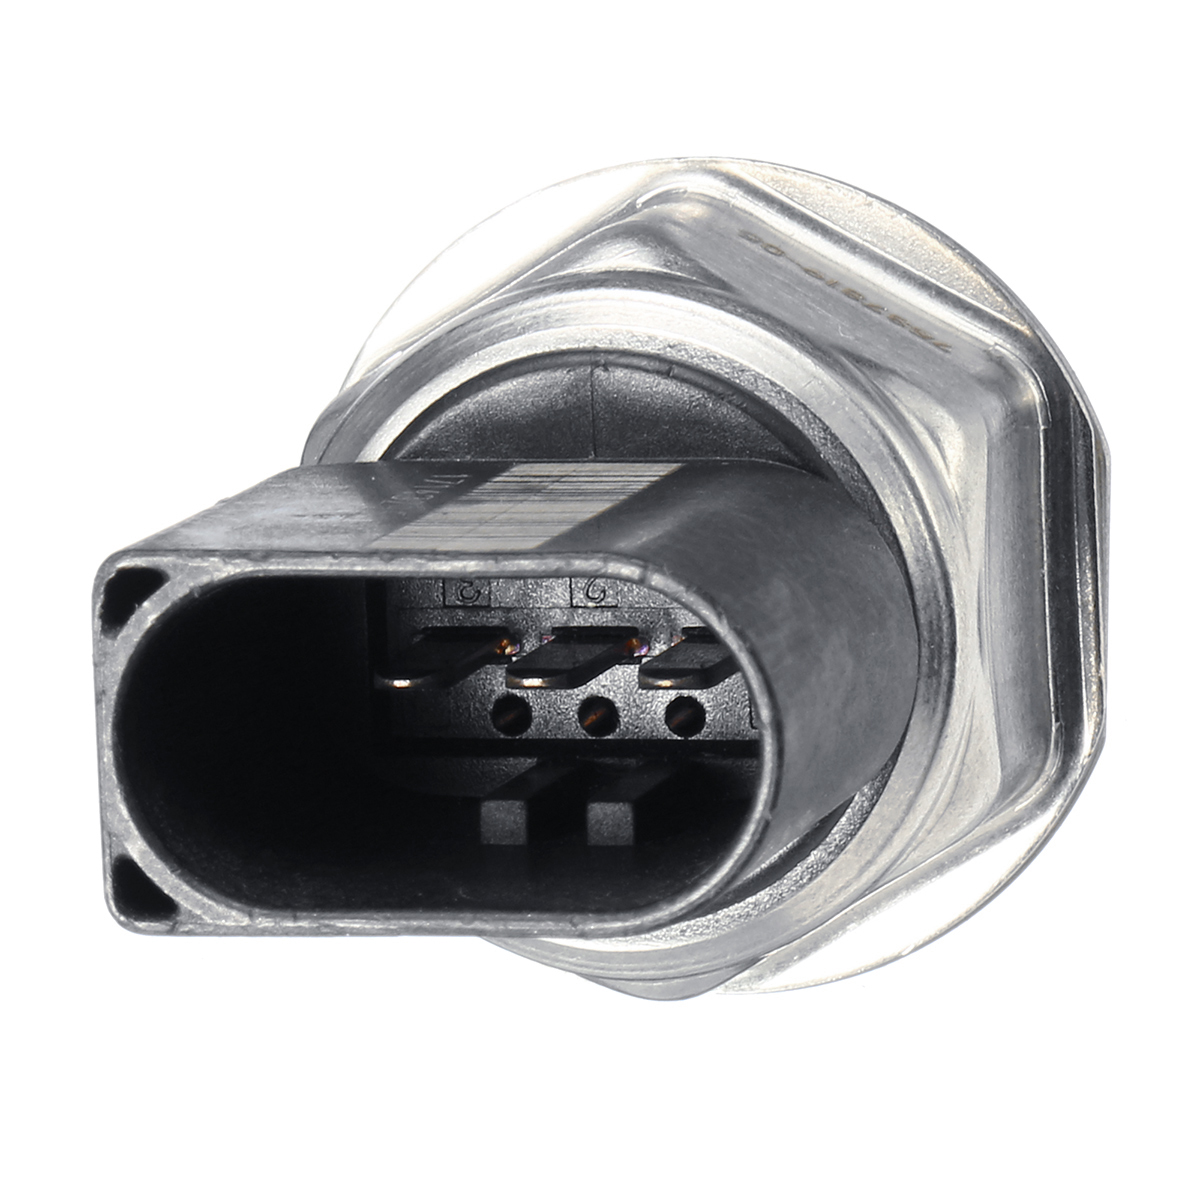 Car-Fuel-Pressure-Sensor-Sender-Transducer-for-BMW-F01-F07-E46-E60-E71-E82-E90-E91-E92-1449098